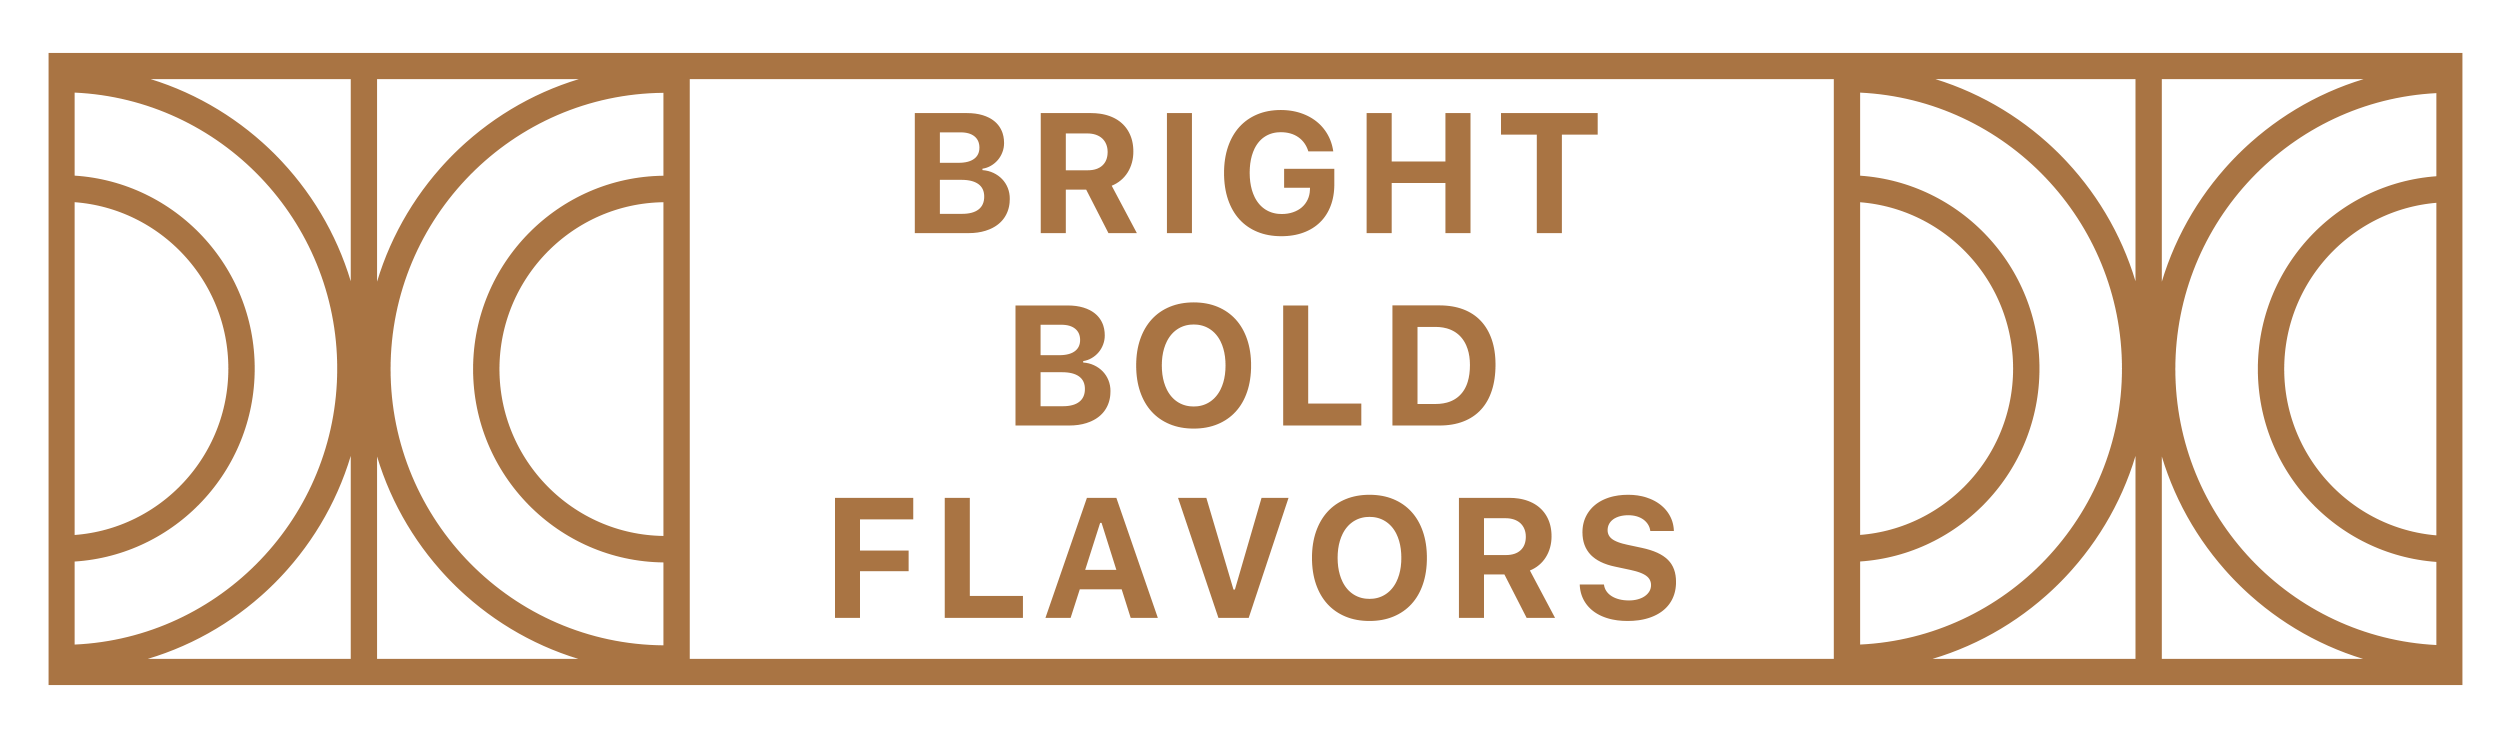 Bright Bold Flavors